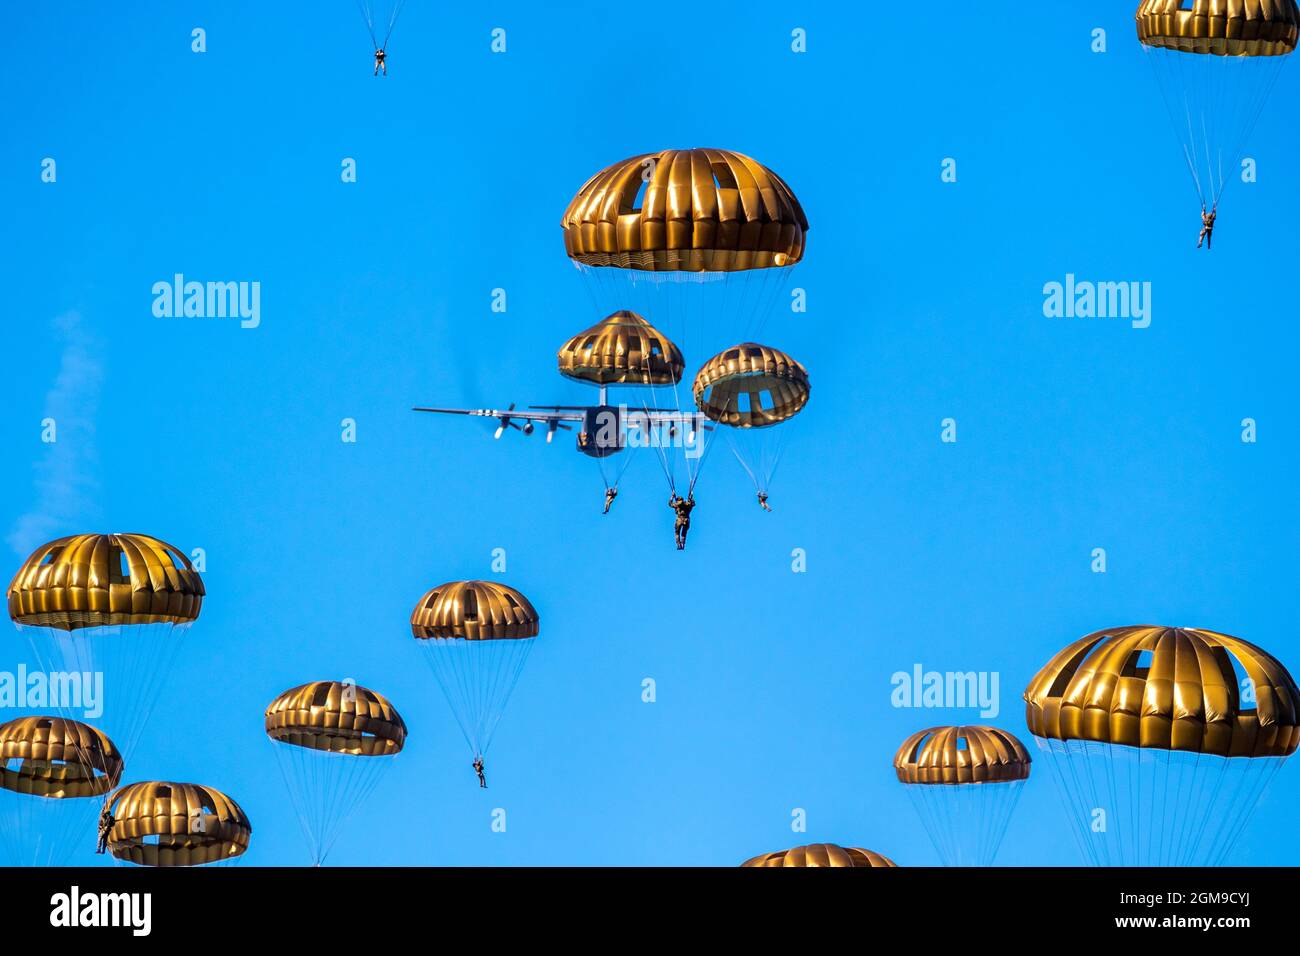 Militärparachutist Fallschirmjäger Fallschirm springen aus einer Luftwaffe Flugzeuge an einem klaren blauen Himmel Tag. Stockfoto